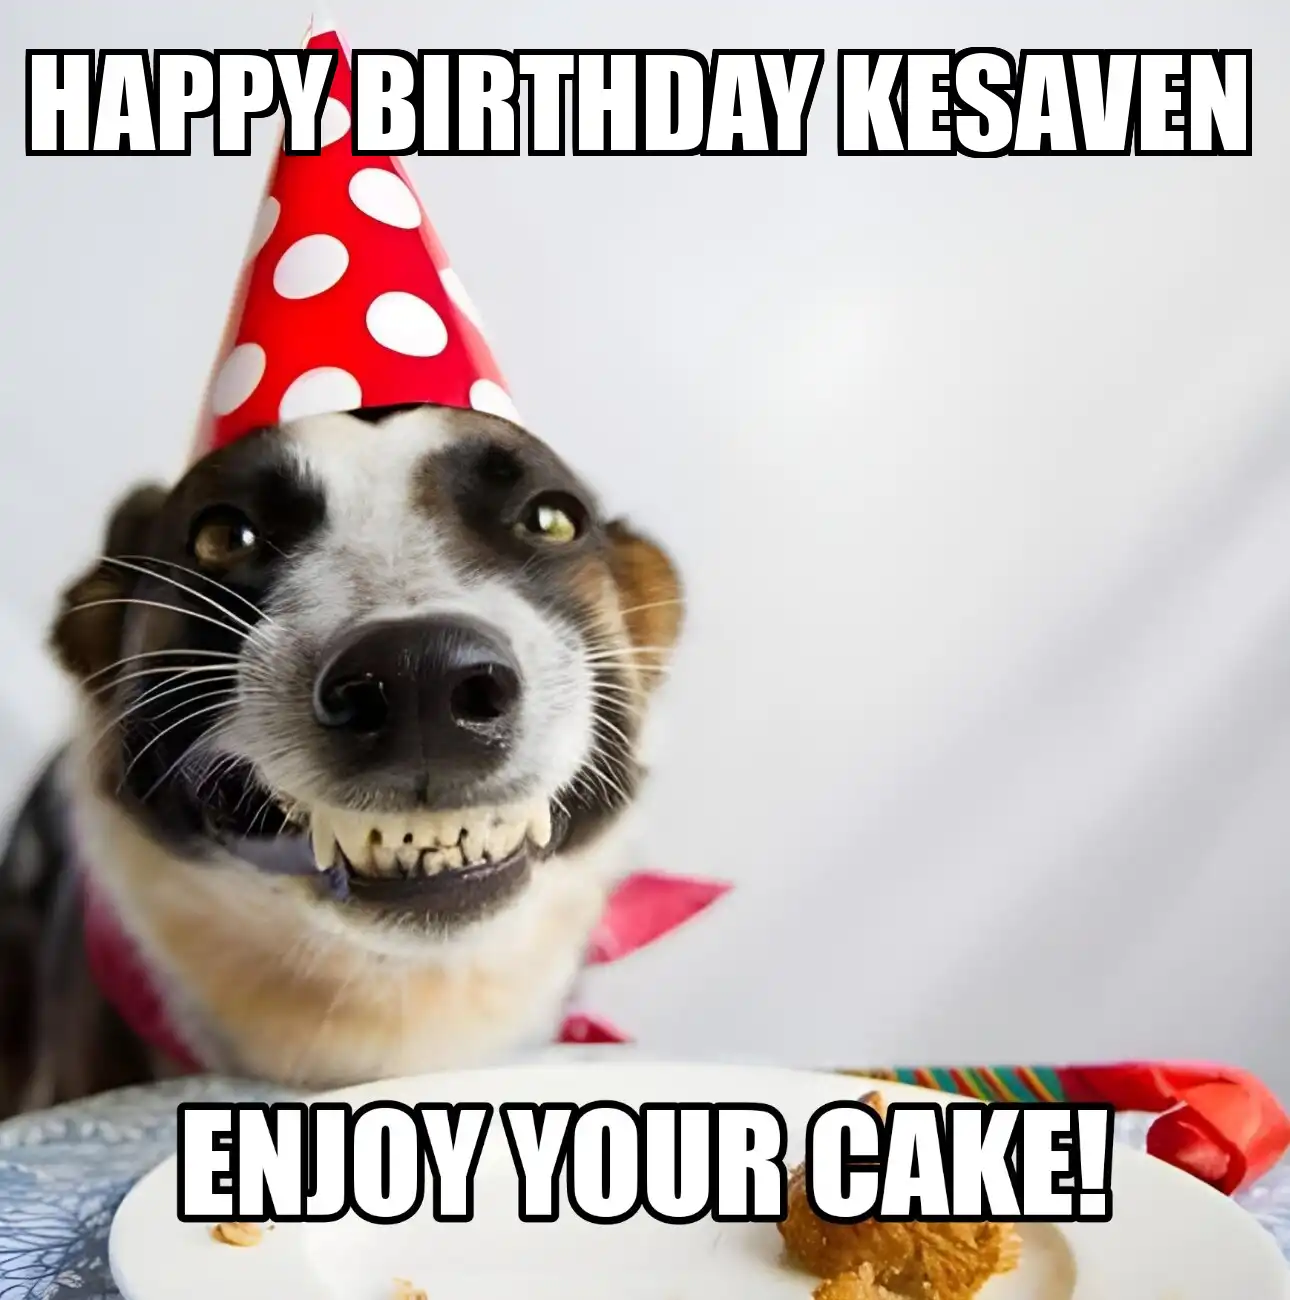 Happy Birthday Kesaven Enjoy Your Cake Dog Meme